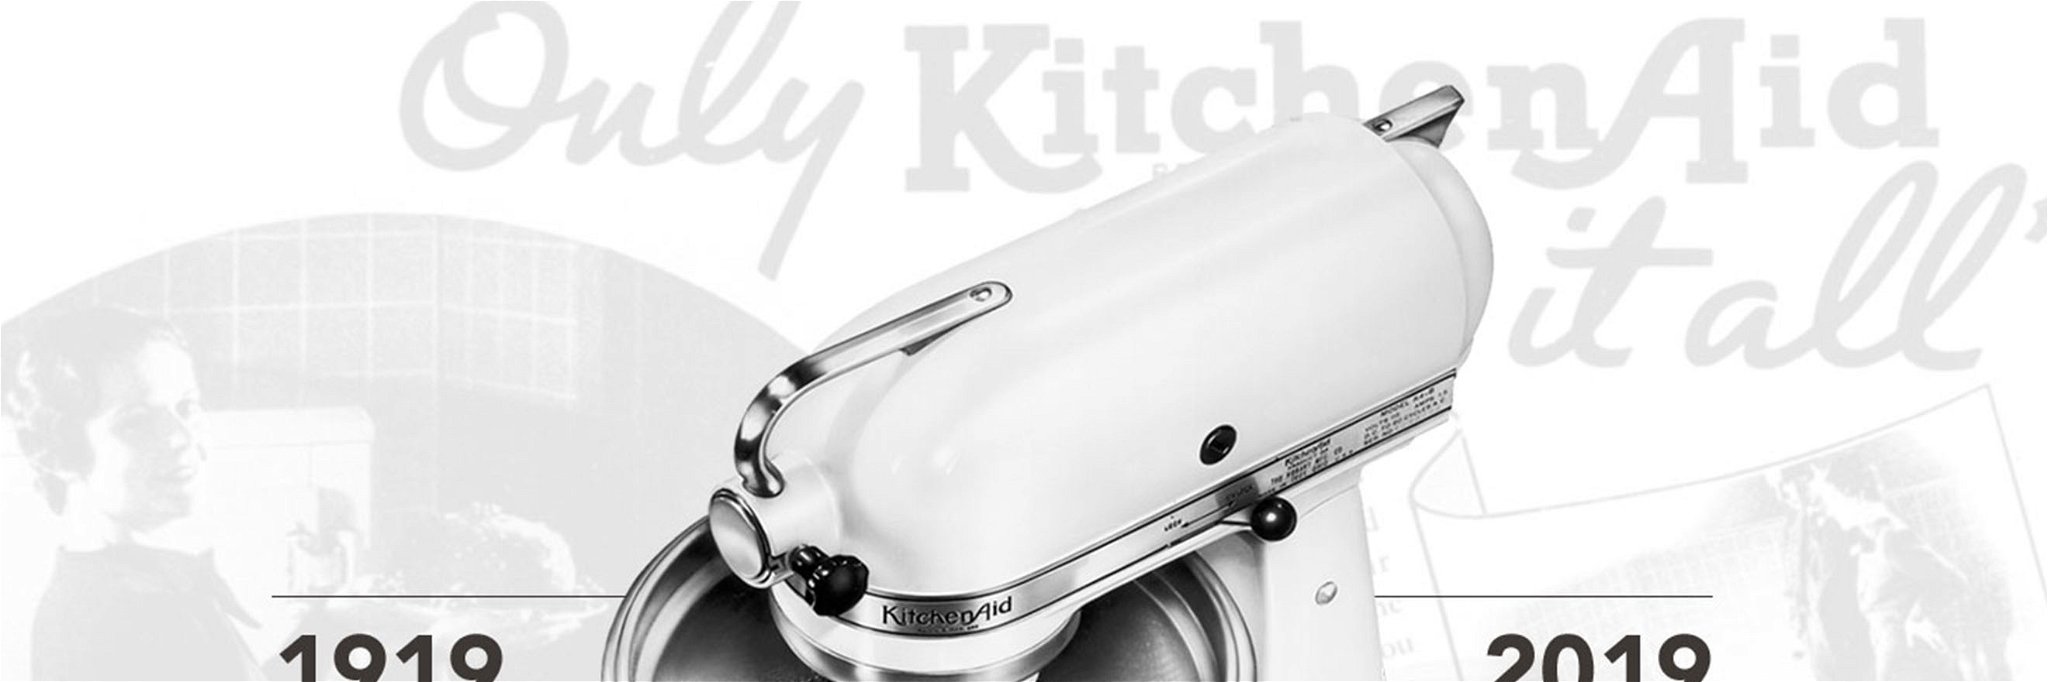 Die ikonischen Produkte von KitchenAid prägen das Kocherlebnis von Hobby- und Profiköchen aus aller Welt.